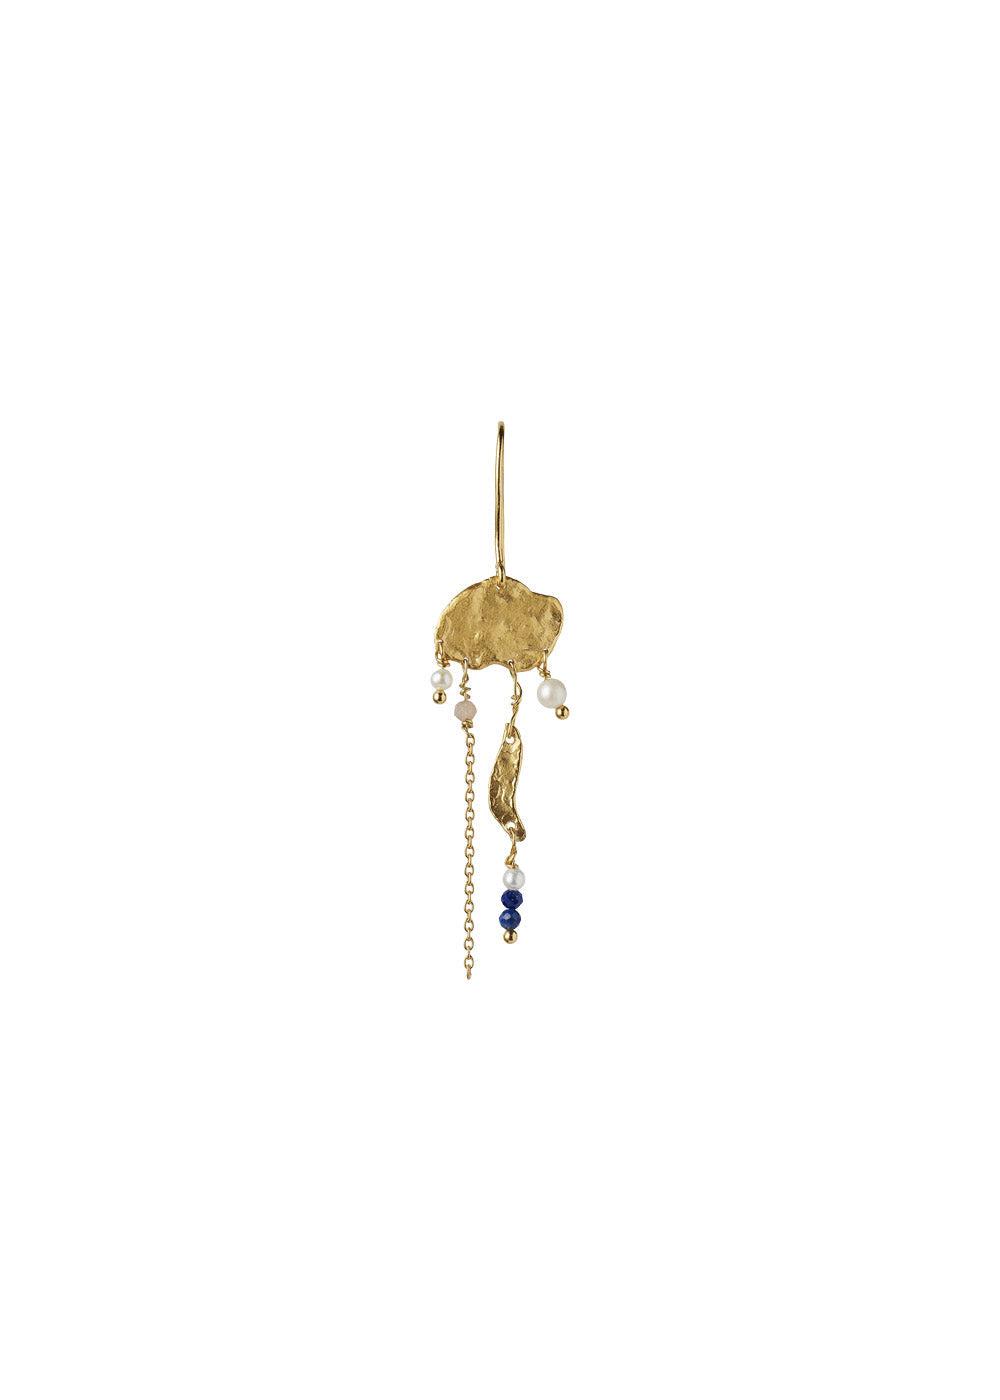 Stine A's long gold splash earring chain and color pop - Gold. Køb øreringe her.